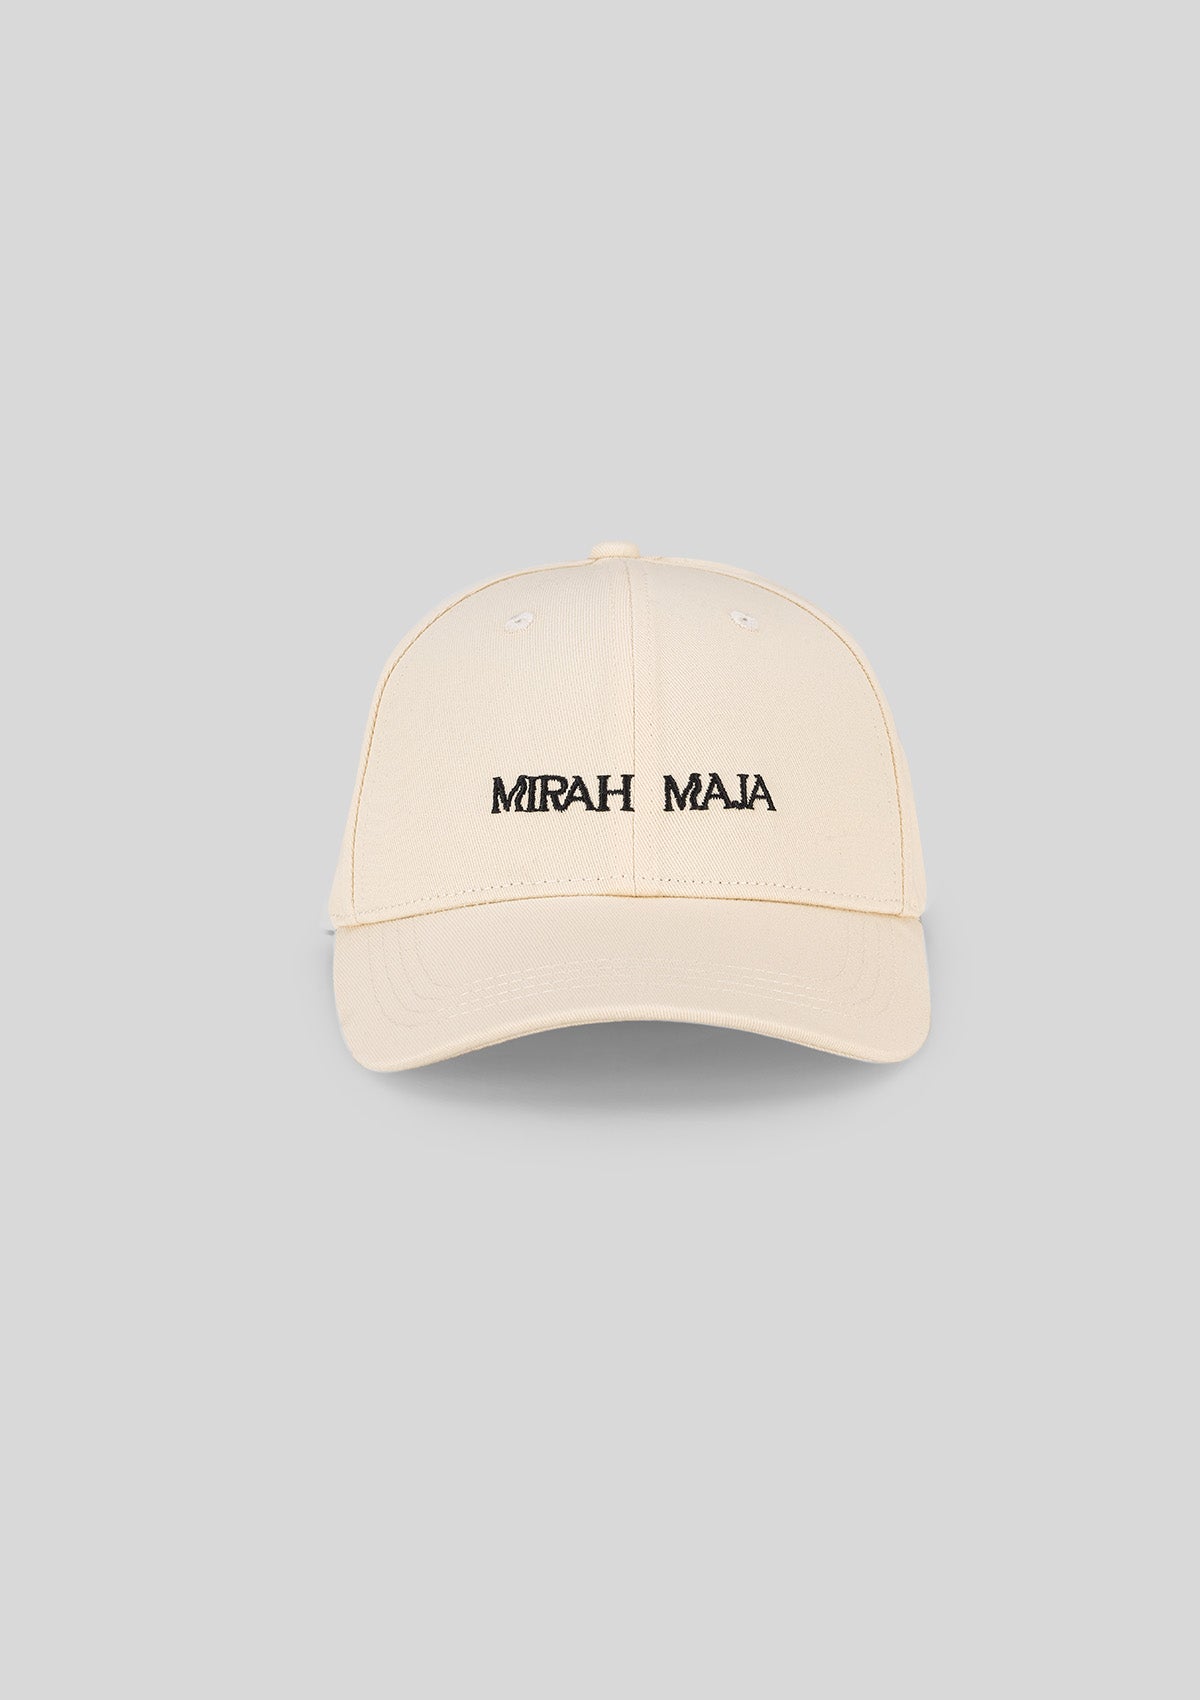 MIRAH MAJA SIGNATURE CAP